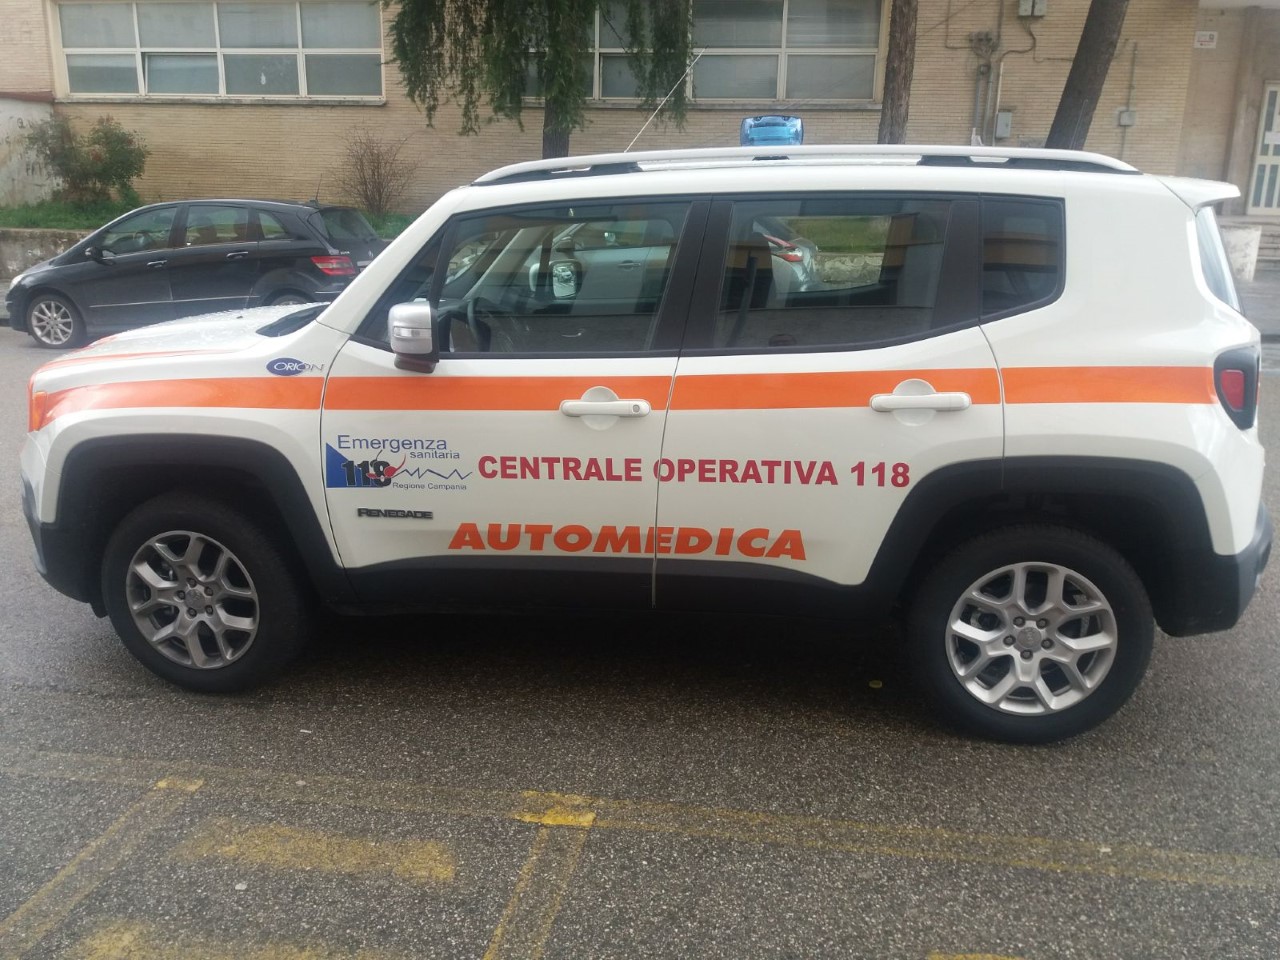 Benevento| ASL, la centrale operativa 118 si arrichisce dell’automedica